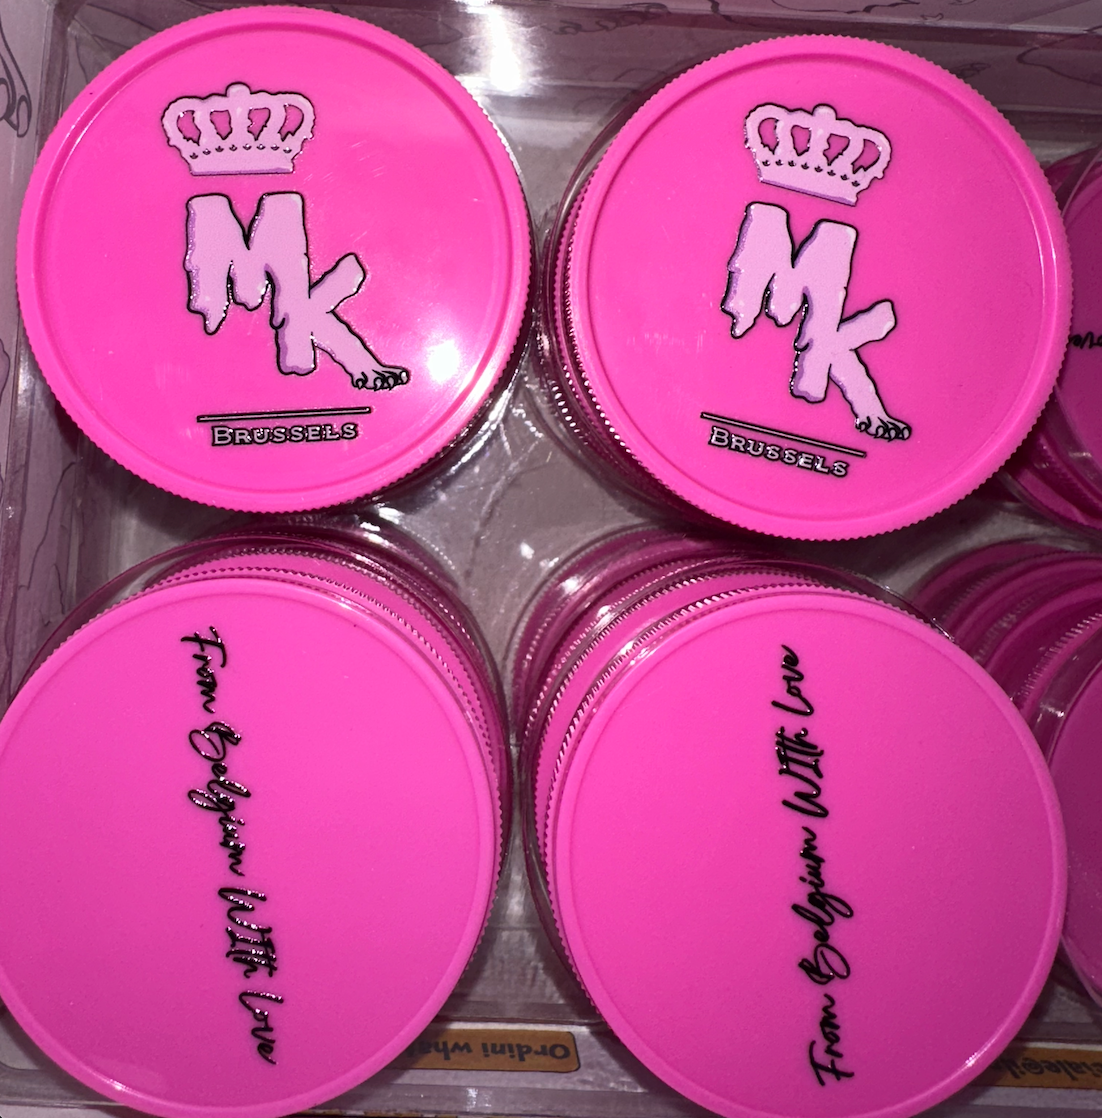 Magic King Grinder Plastique Rose - MK Melted (2pièces)